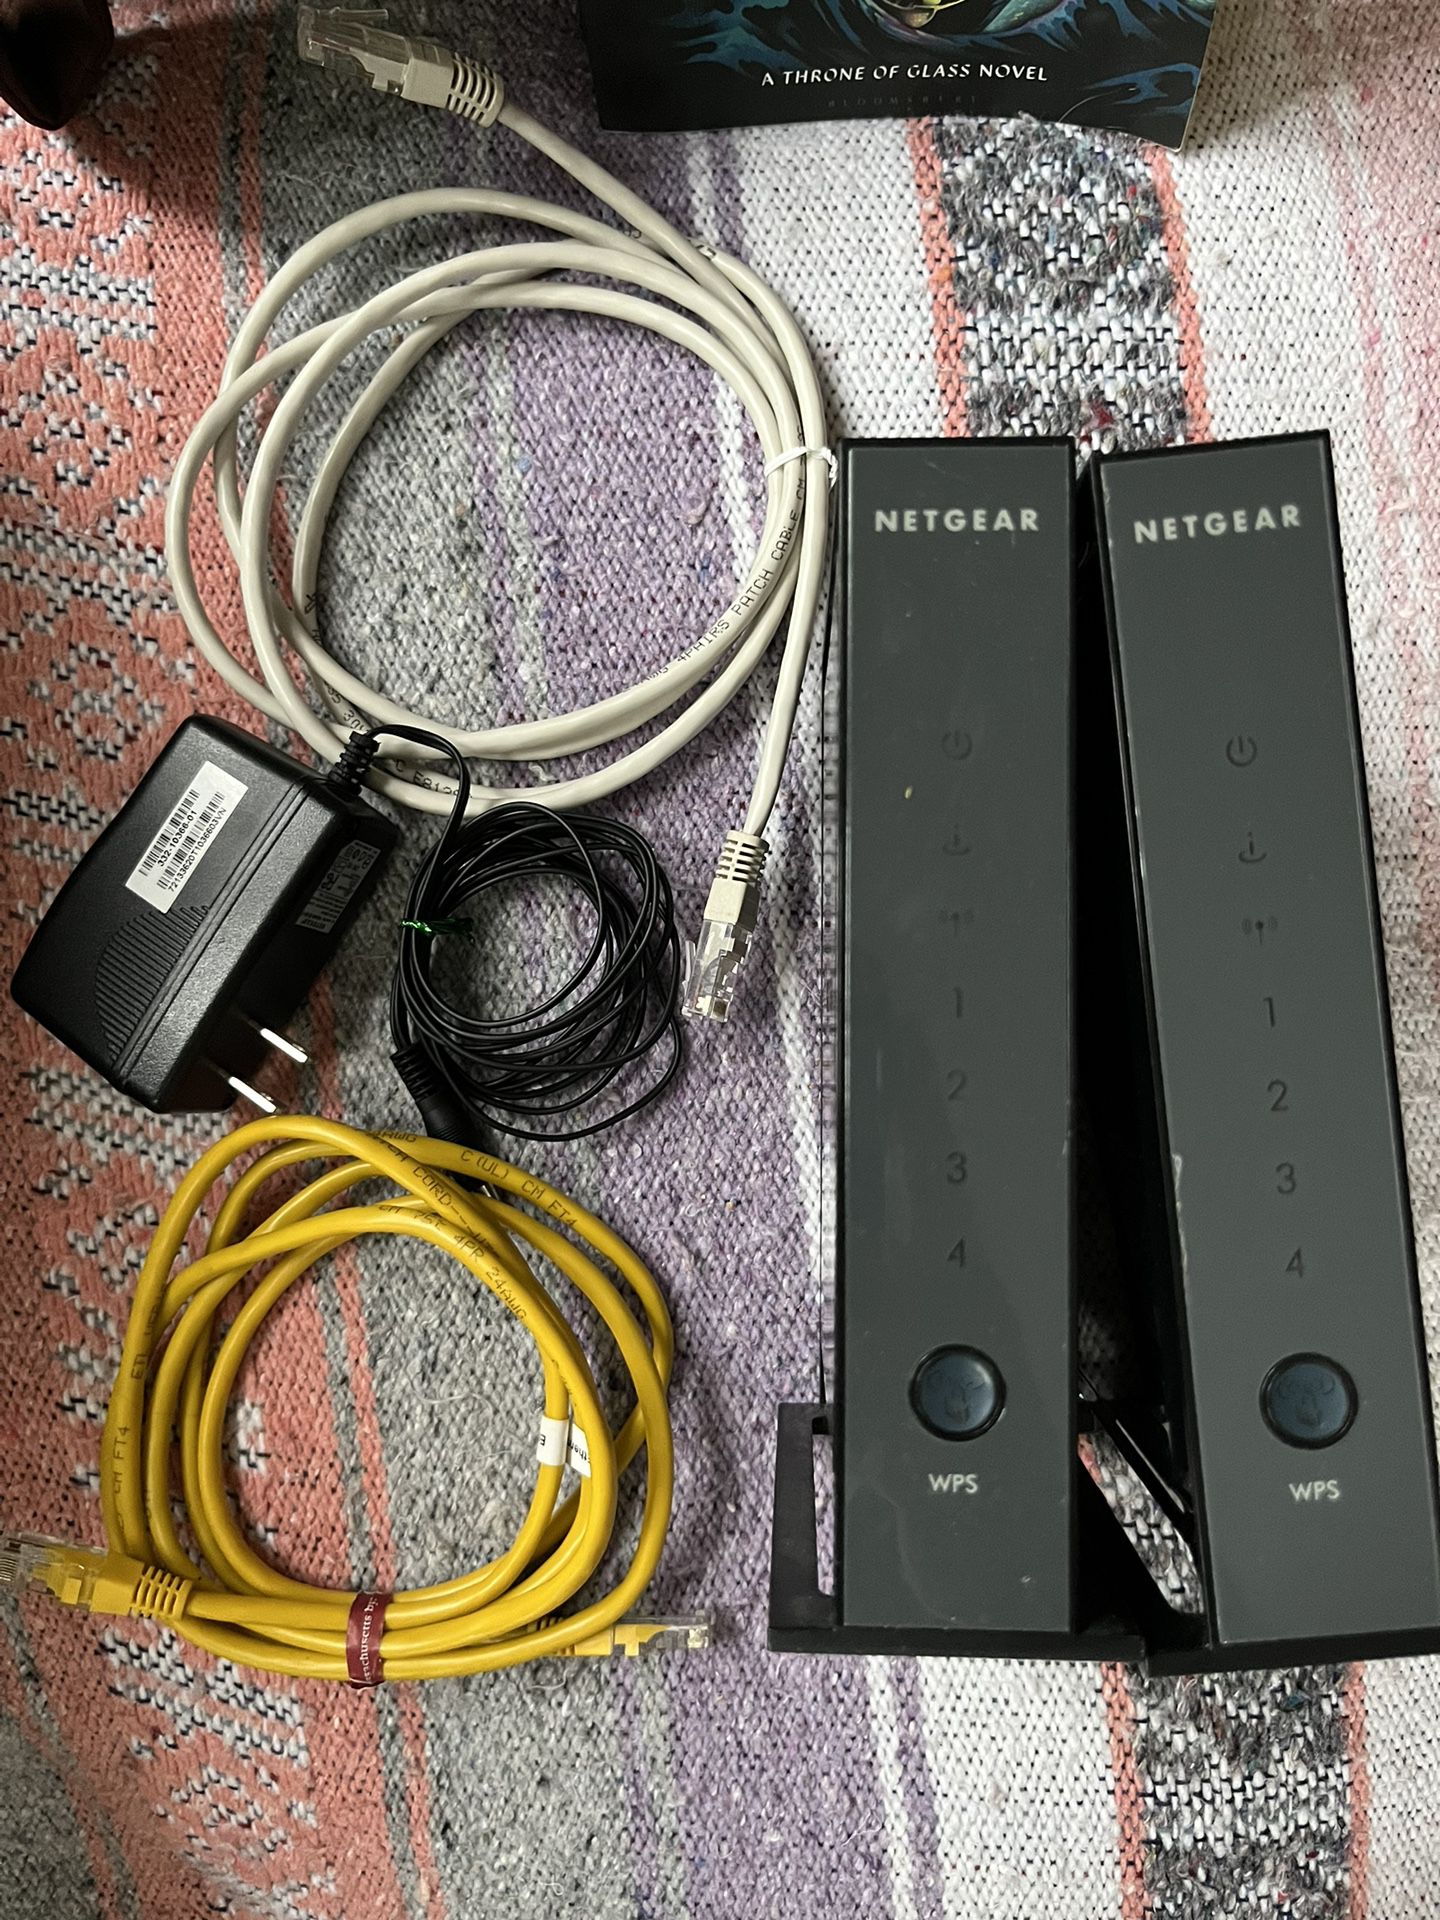 Netgear Wireless Routers